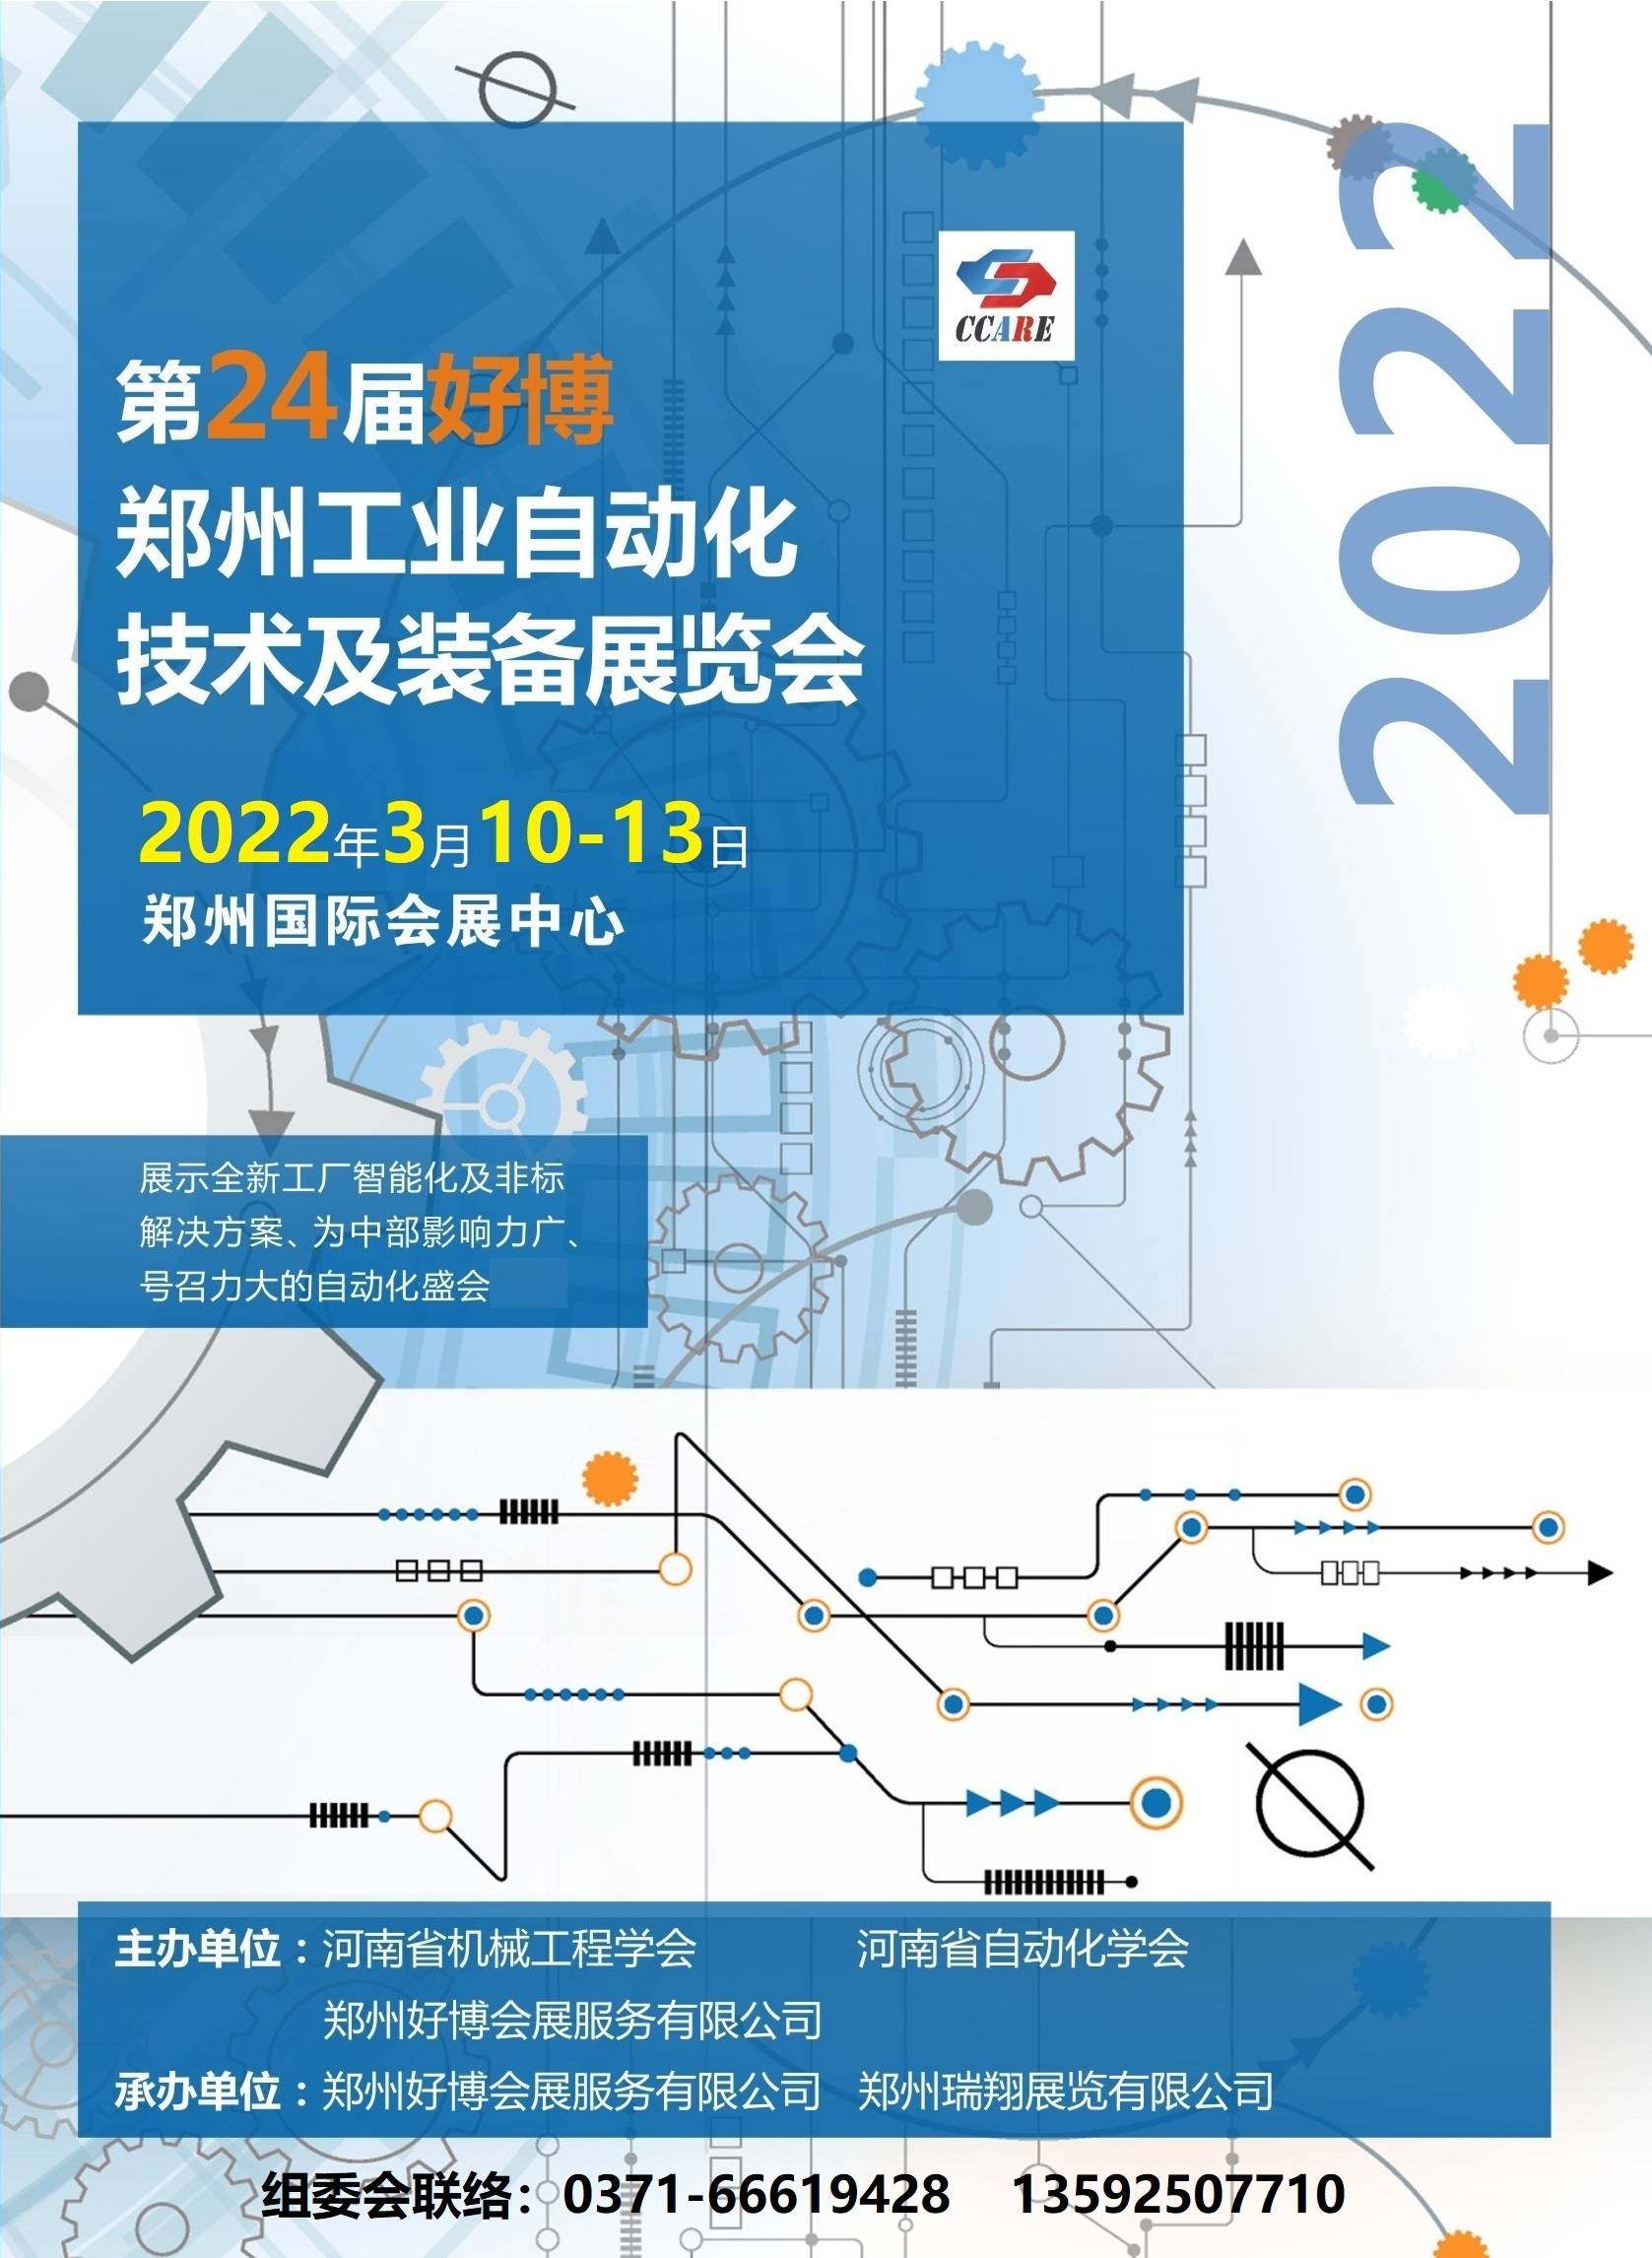 展览会|一大波自动化知名企业将亮相2022年3月10-13日好博郑州工业自动化展览会